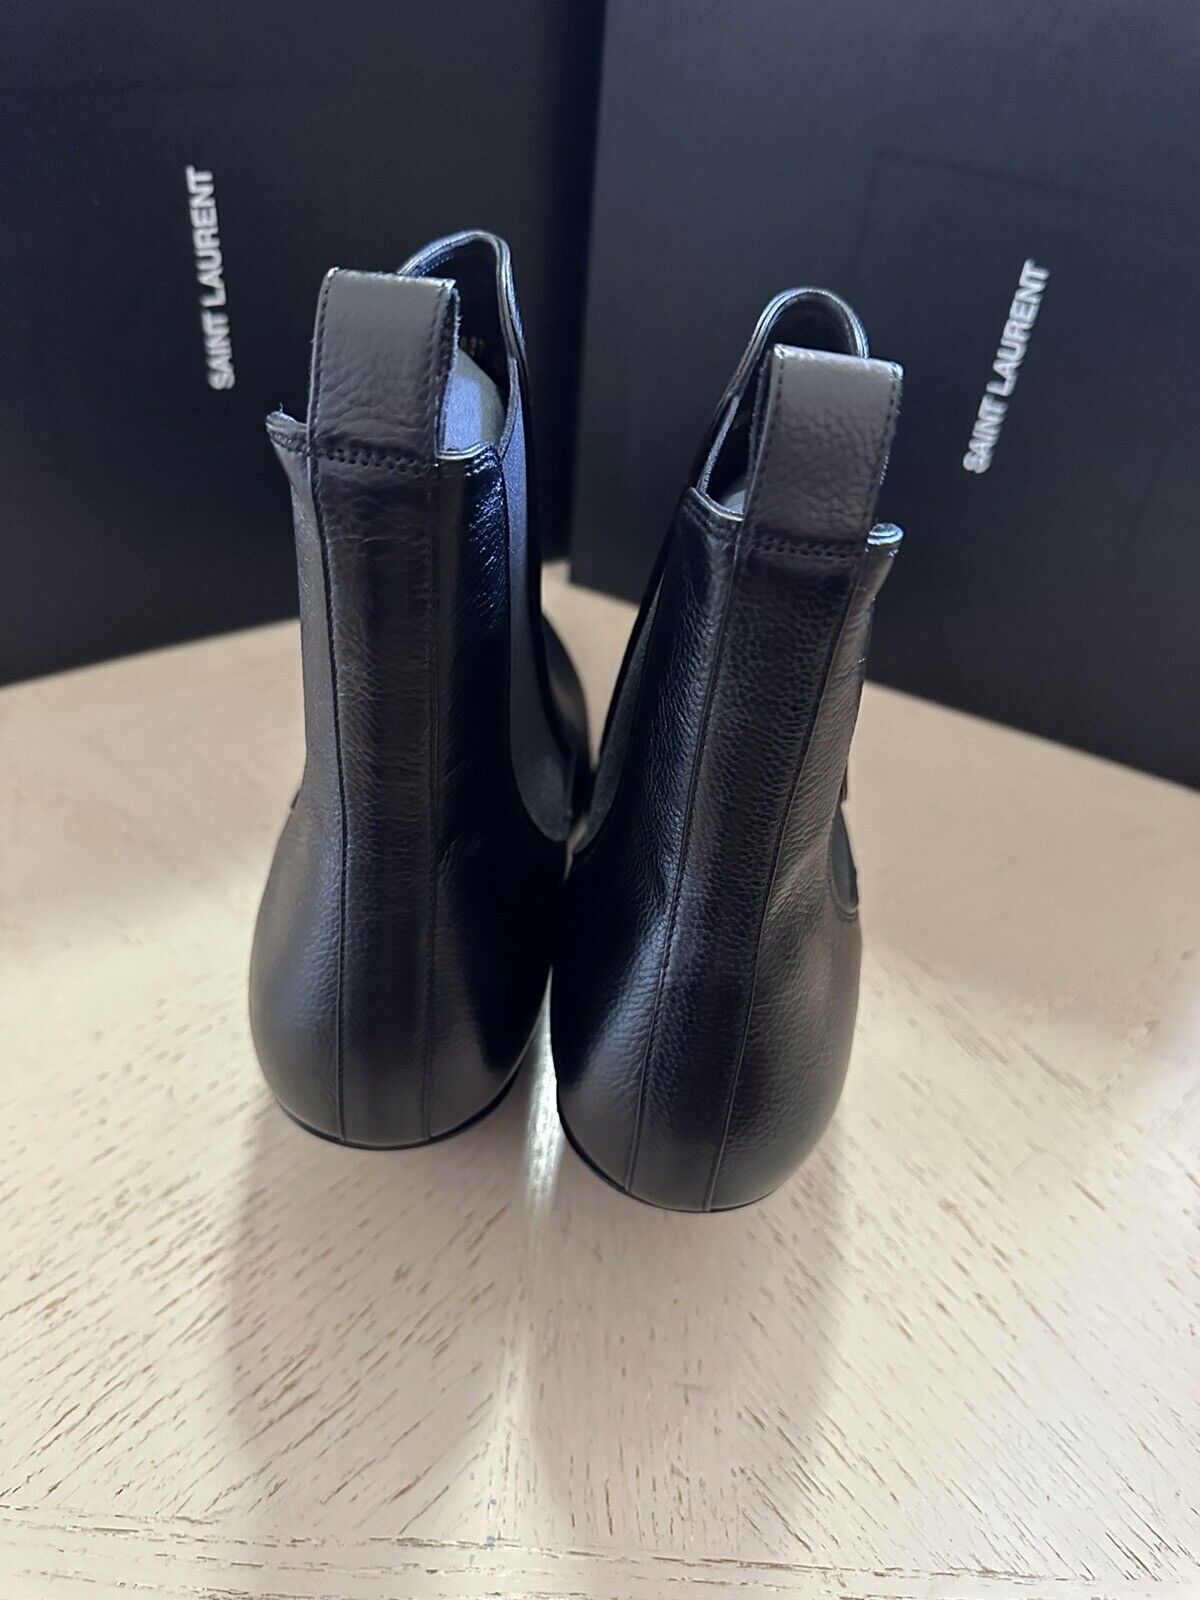 NIB $1195 Saint Laurent Men’s Leather Boots Shoes Black 9.5 US/42.5 Eu 685837